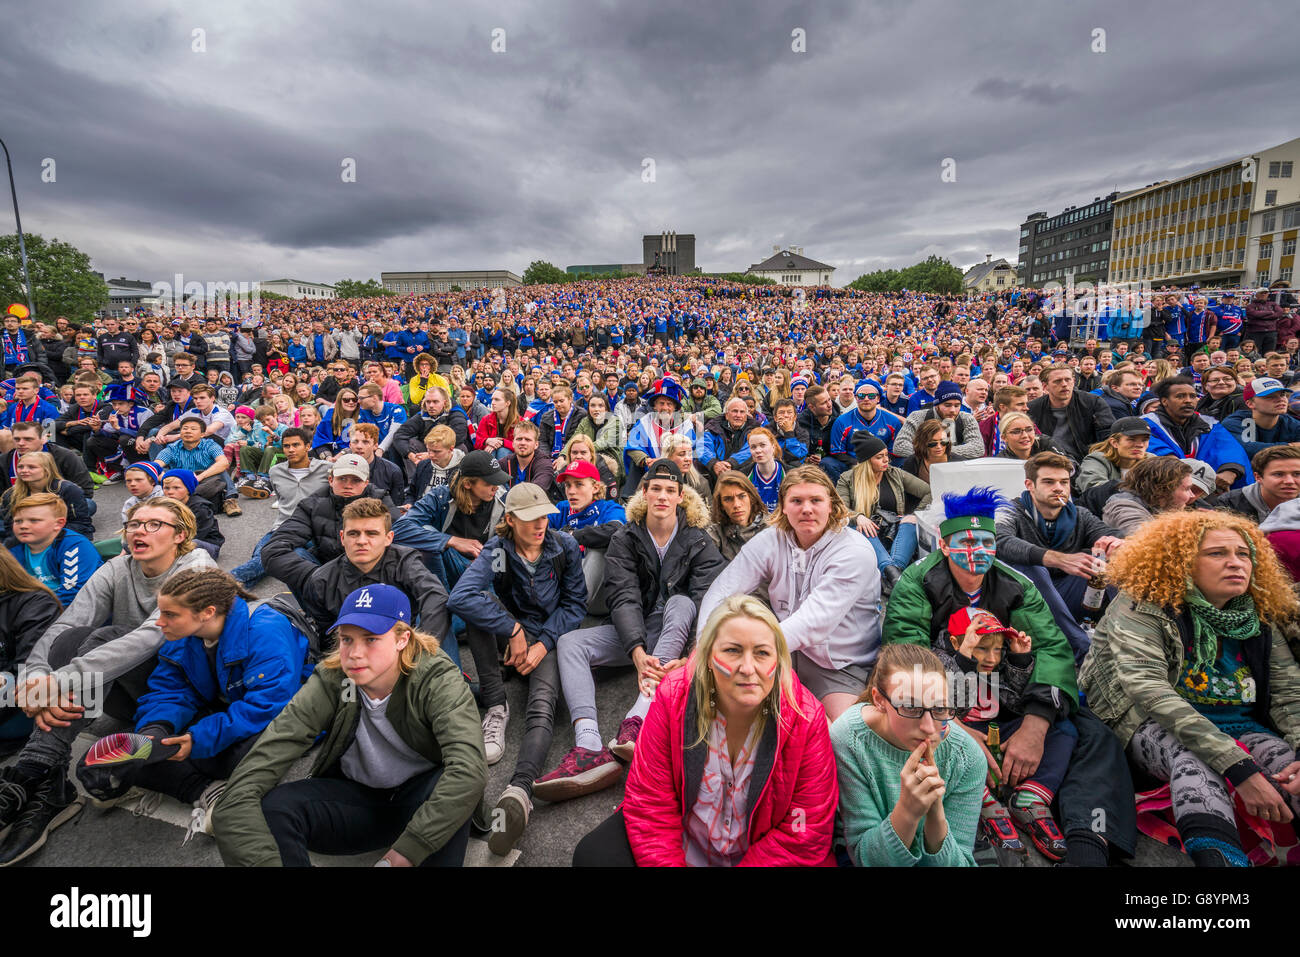 La foule dans le centre de Reykjavik en regardant l'Islande contre l'Angleterre dans le tournoi de football de l'UEFA Euro 2016, Reykjavik, Islande. L'Islande a gagné 2-1. 27 juin, 2016 Banque D'Images